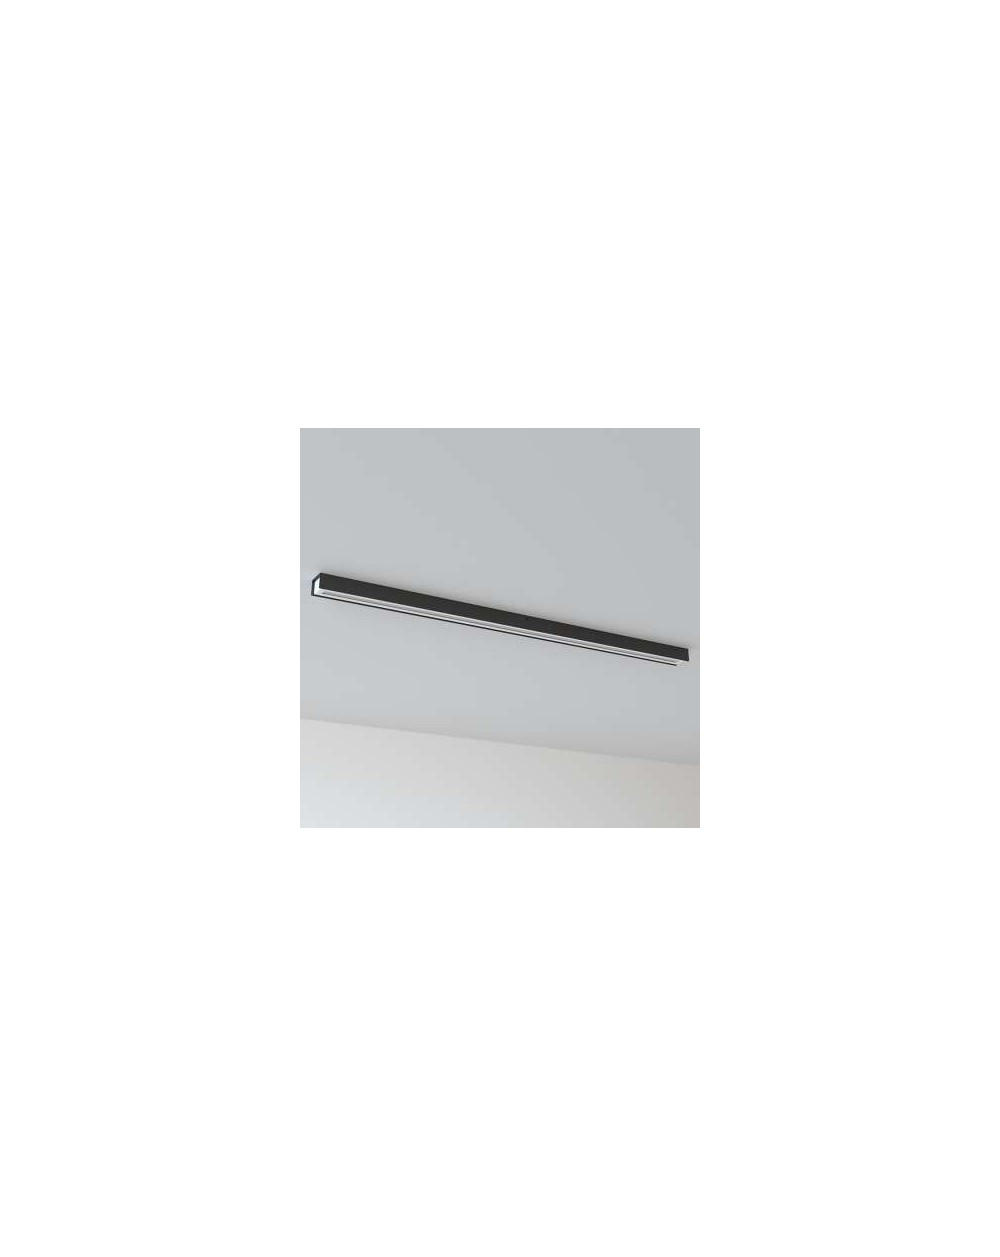 Lampa sufitowa IMA plafon aluminiowy - Cleoni nowoczesna oprawa ledowa 1200 mm